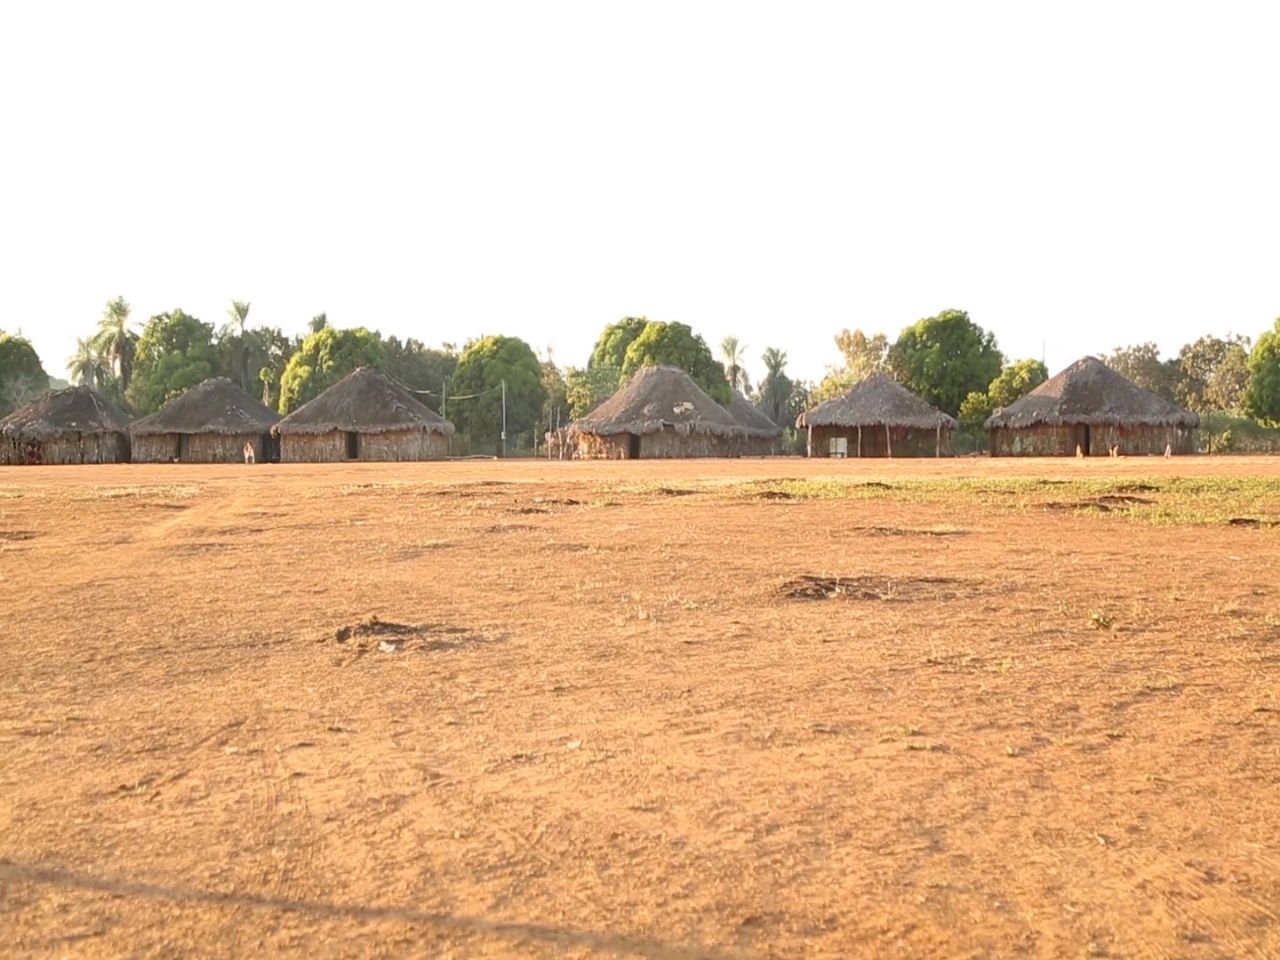 Imagem de aldeia em território indígena mostra construções tradicionais de palha e madeira na linha do horizonte